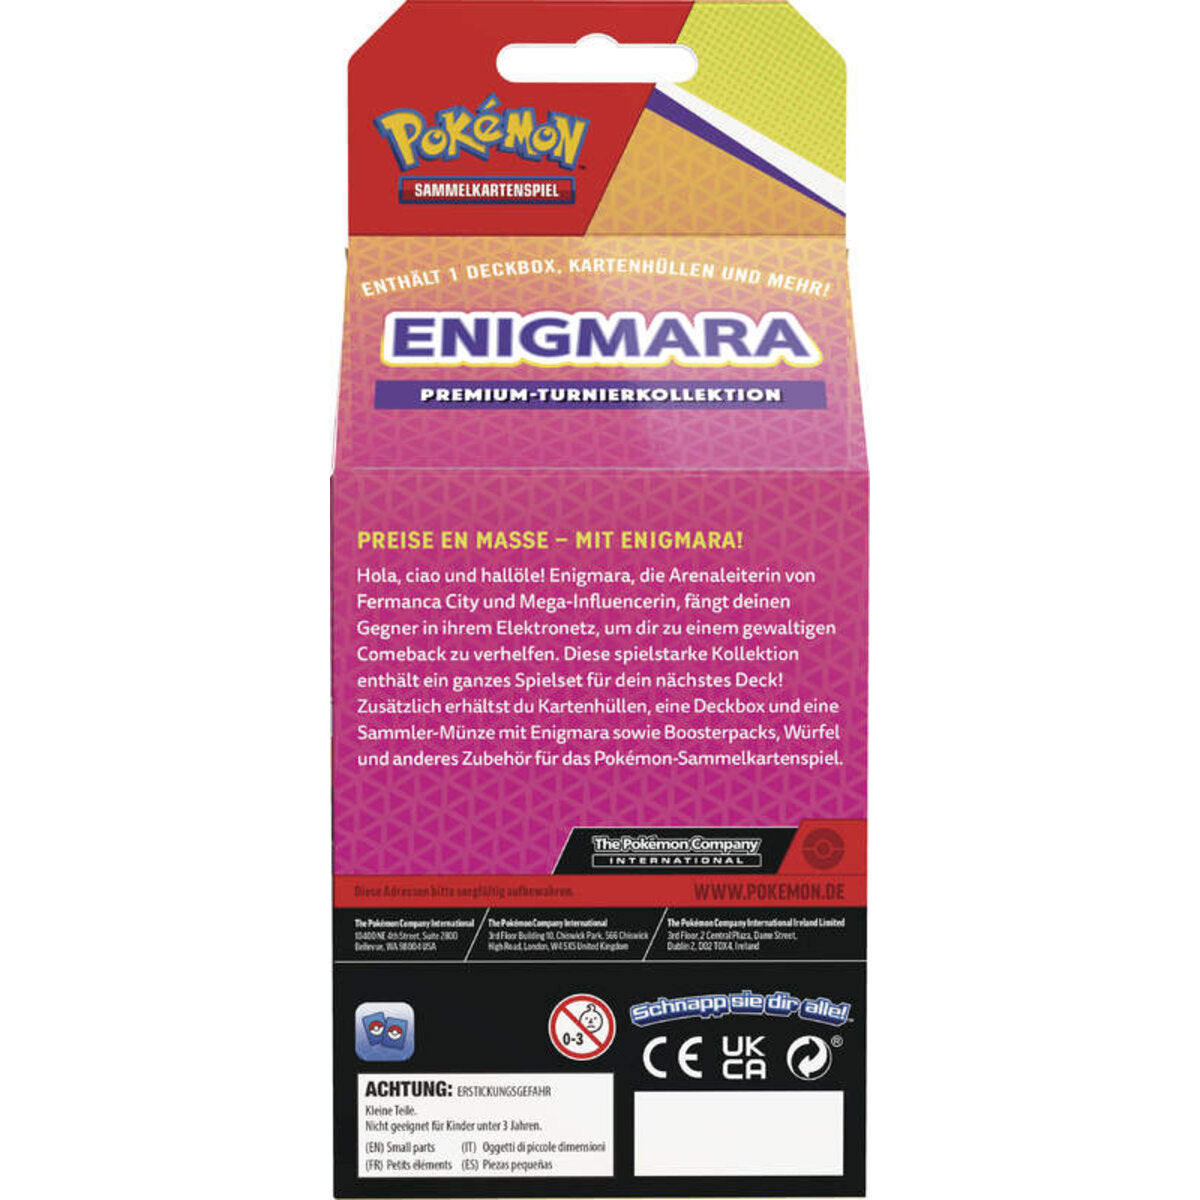 Pokemon Premium-Turnierkollekt Enigmara